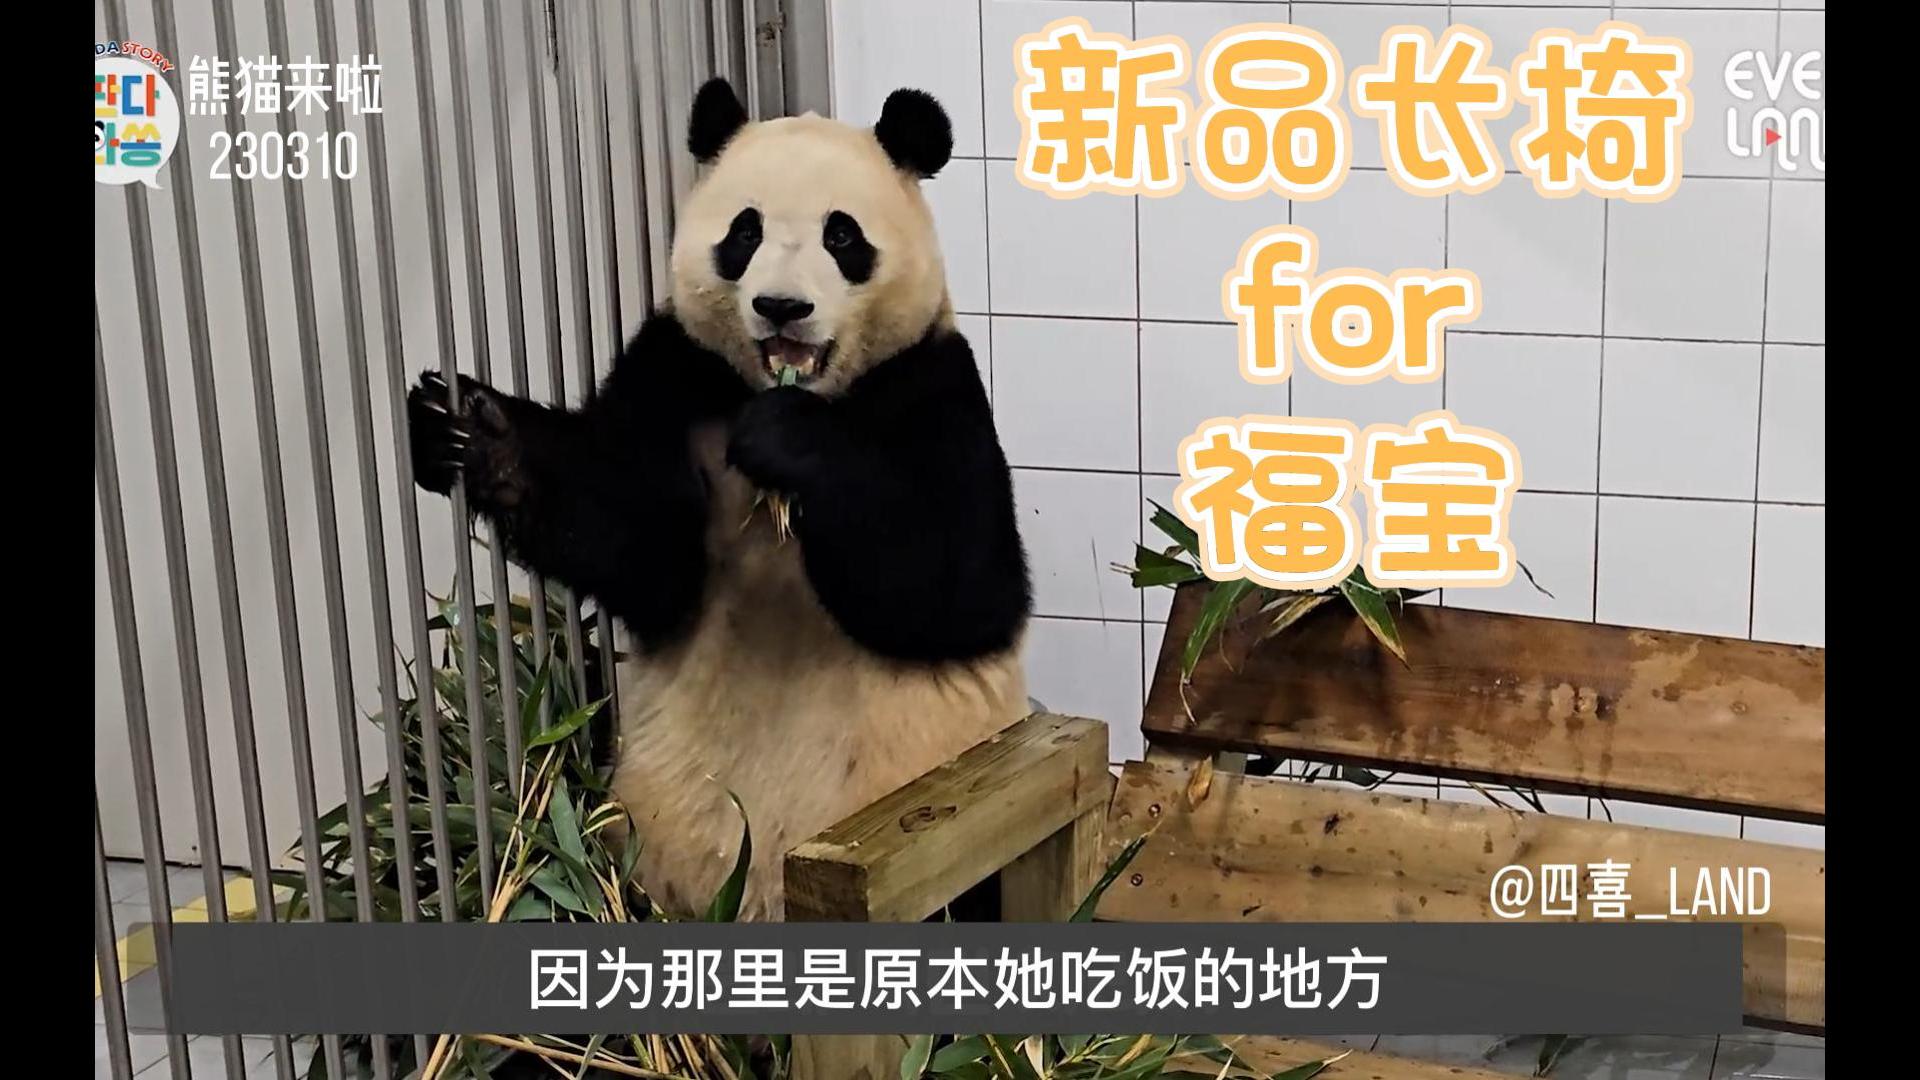 中字丨熊猫来啦丨小熊精福宝为了要竹子还跟爷爷示威呢！原来长椅从制作到使用需要花费很多心思 宋爷爷辛苦了